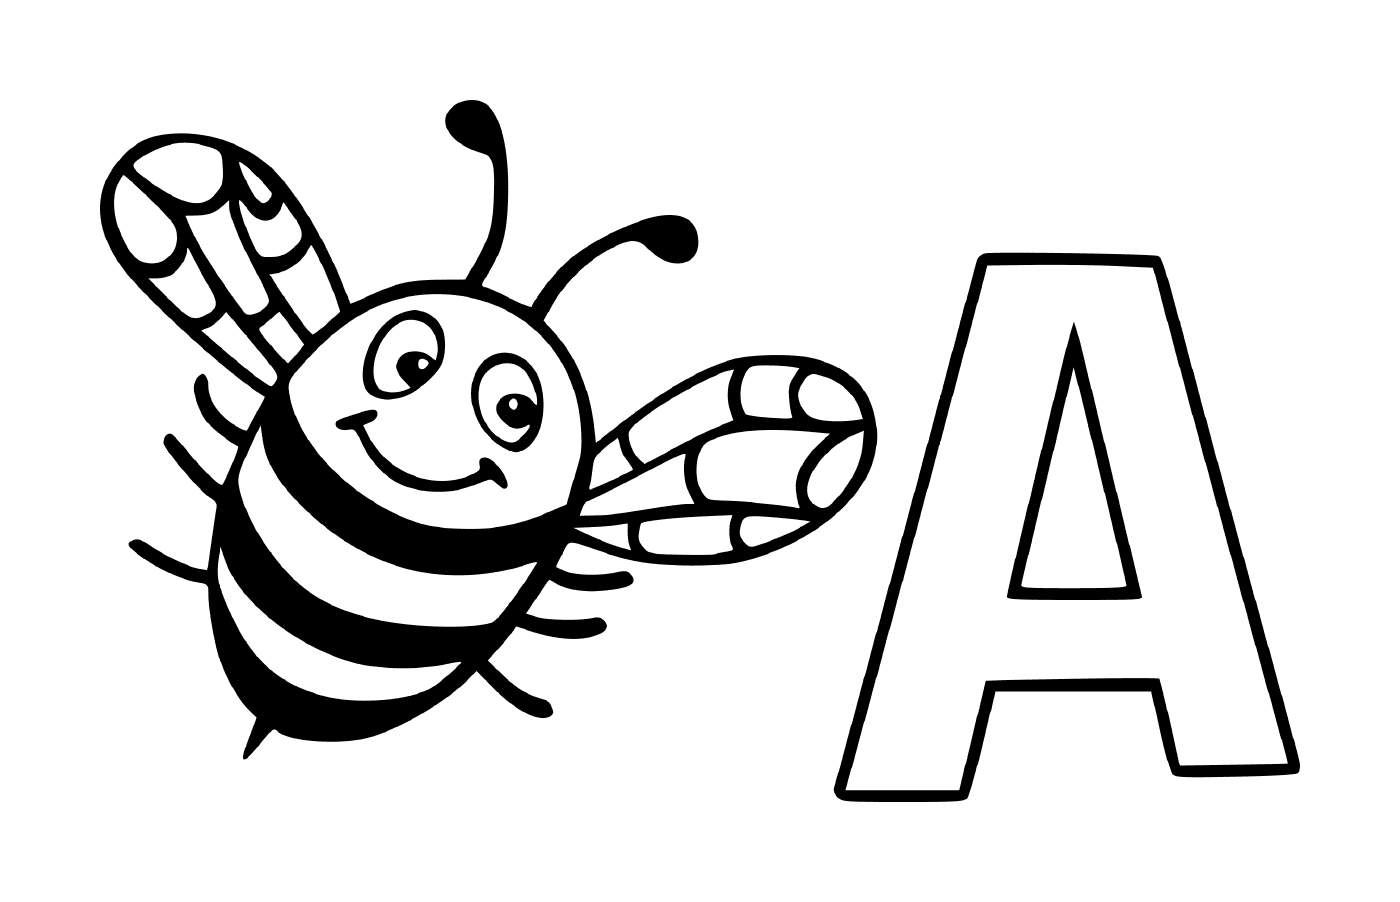  Lettera A con un'ape 